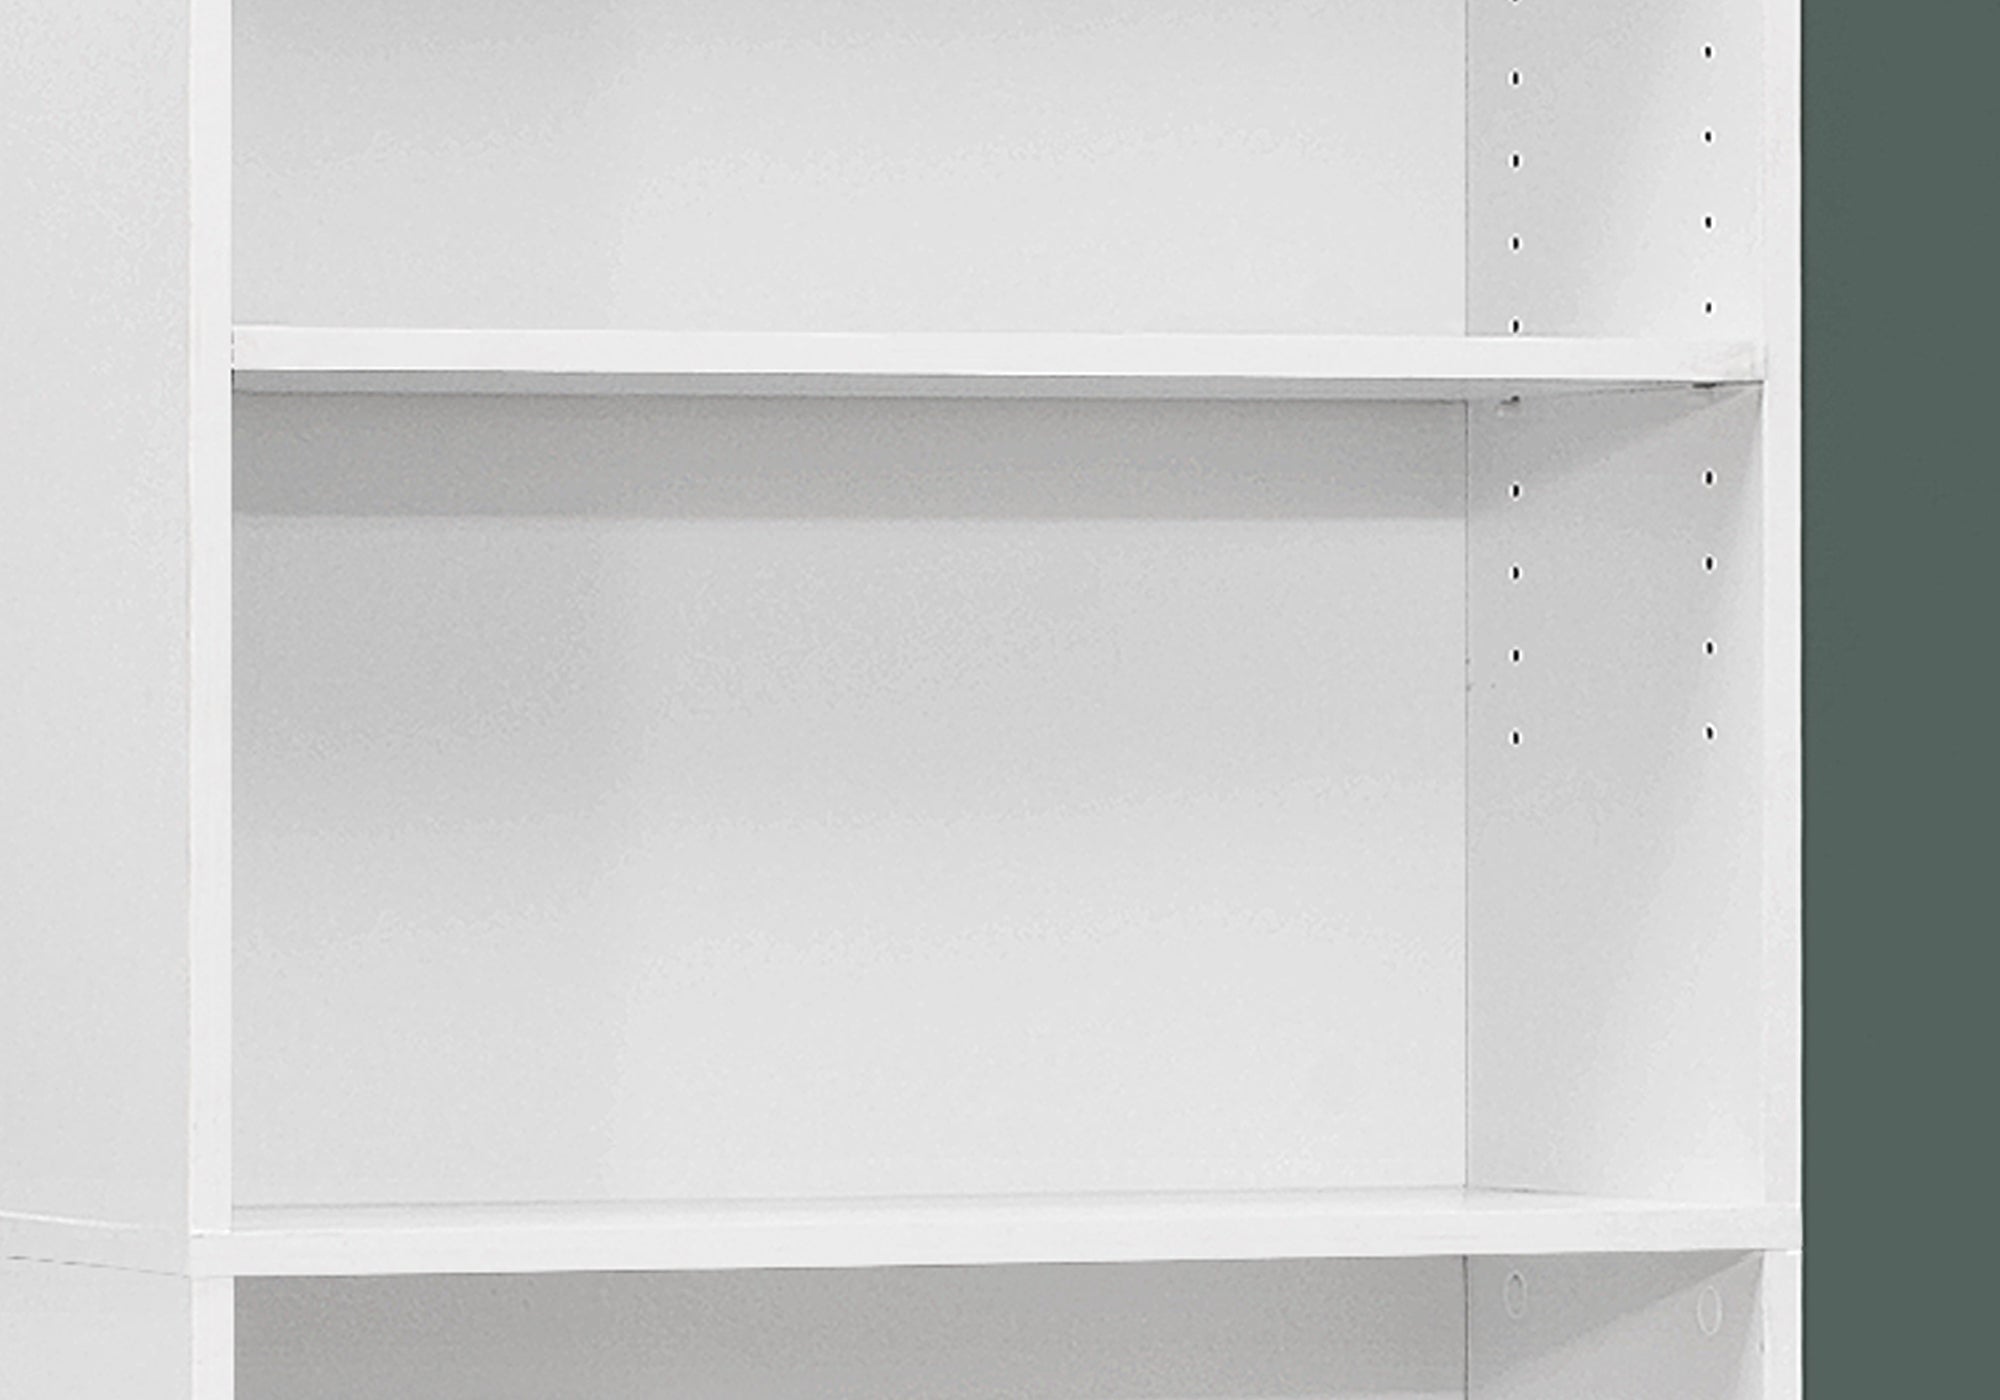 71" White Wood Adjustable Bookcase